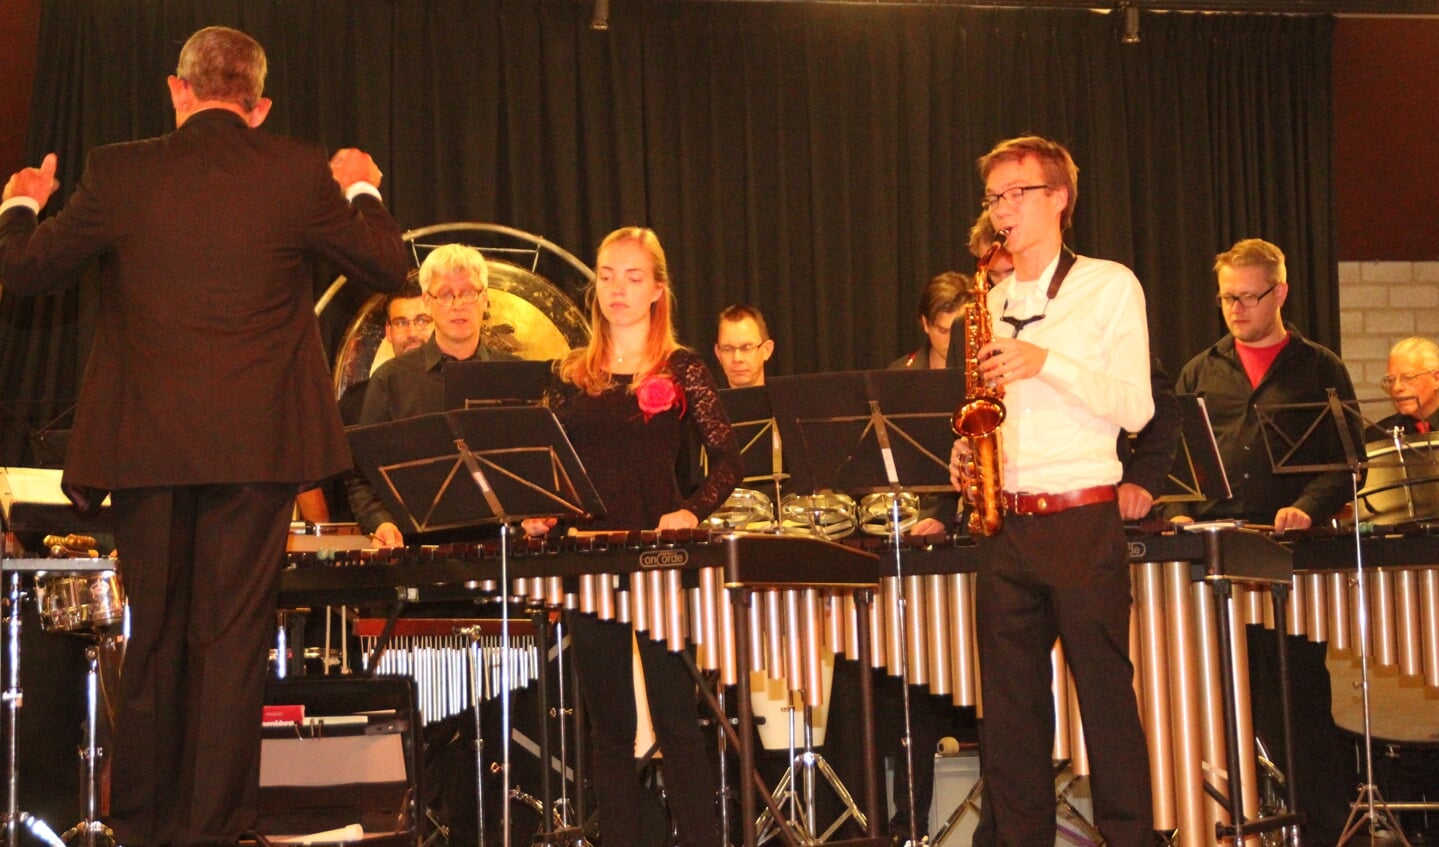 Muzikale bijdrage van Wytze de Swart die eerste altsax speelt bij de KBH.